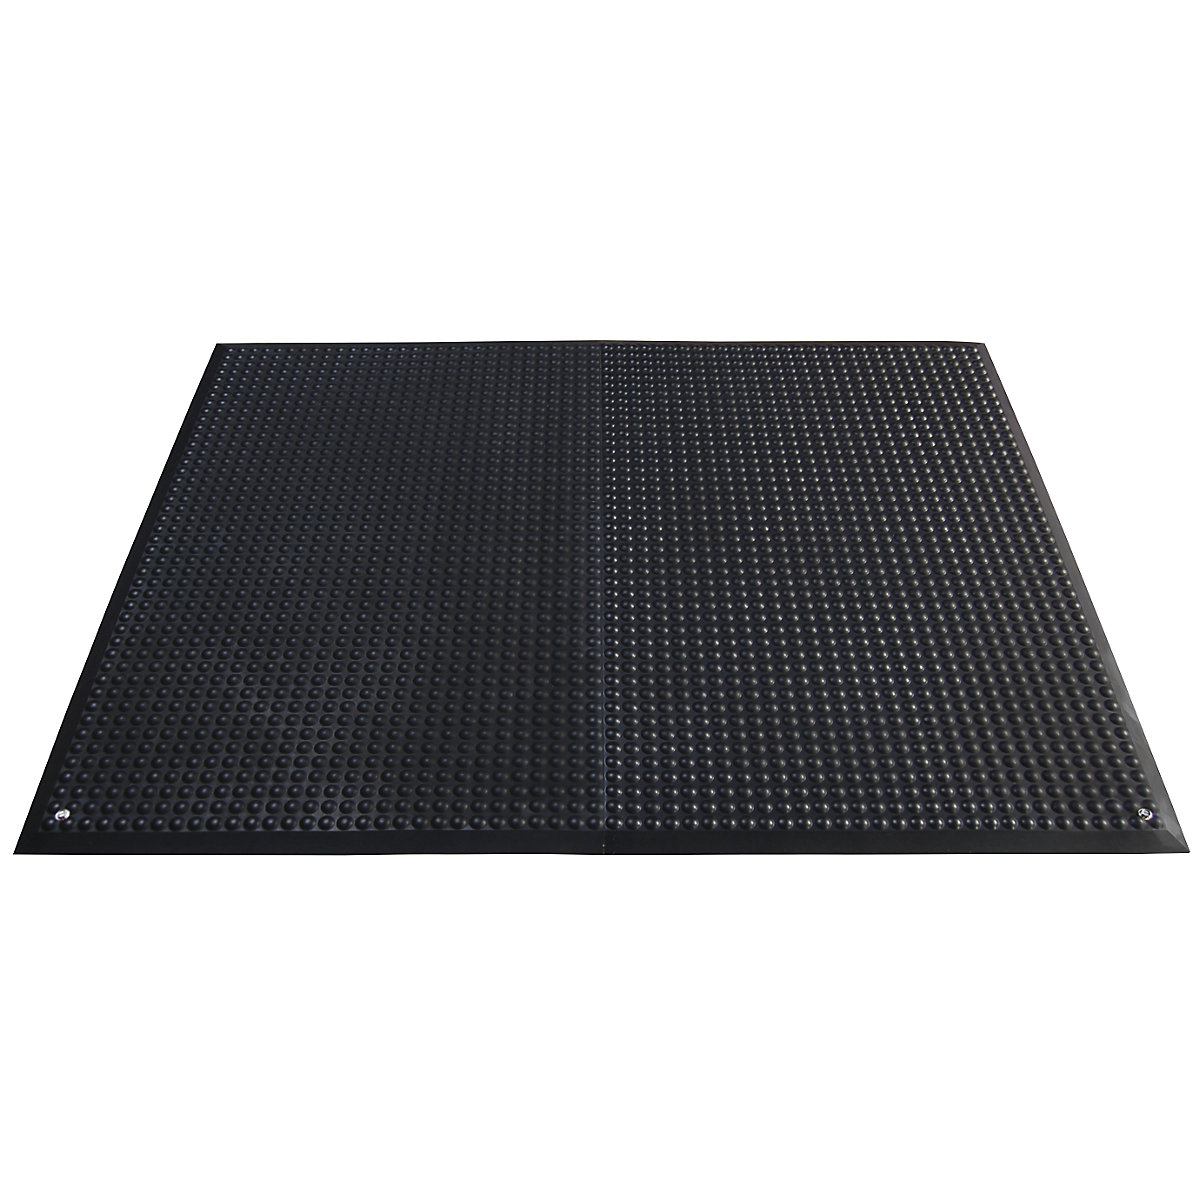 YOGA ERGO FUSION ESD workstation matting, polyurethane, LxW 1250 x 950 mm